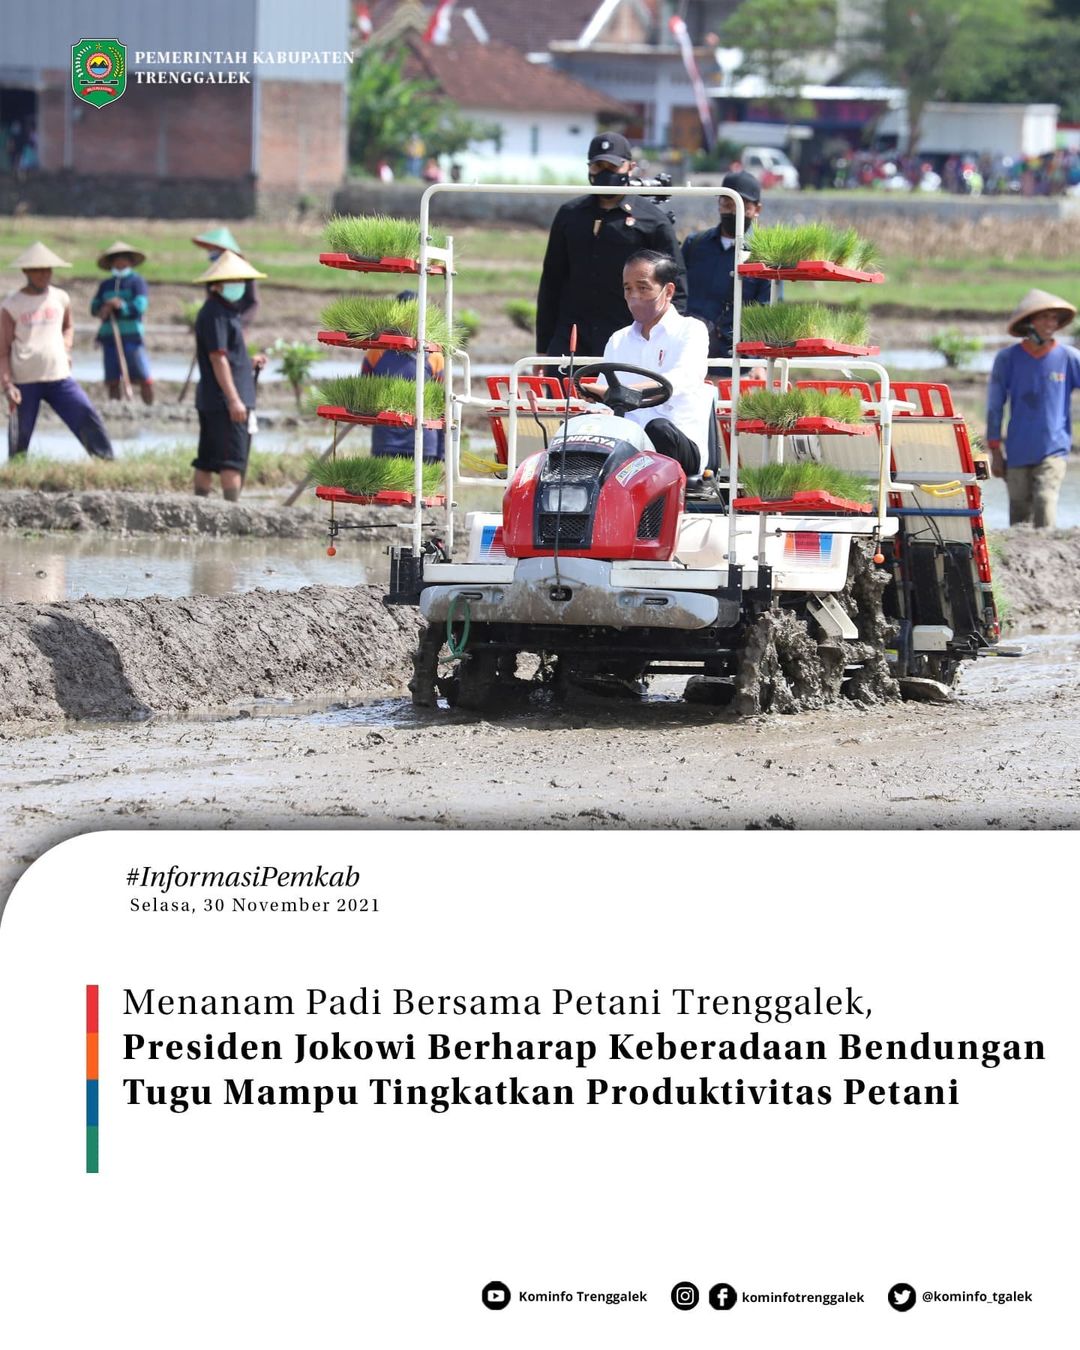 Menanam Padi Bersama Petani Trenggalek, Presiden Jokowi Berharap Keberadaan Bendungan Tugu Mampu Tingkatkan Produktifitas Petani